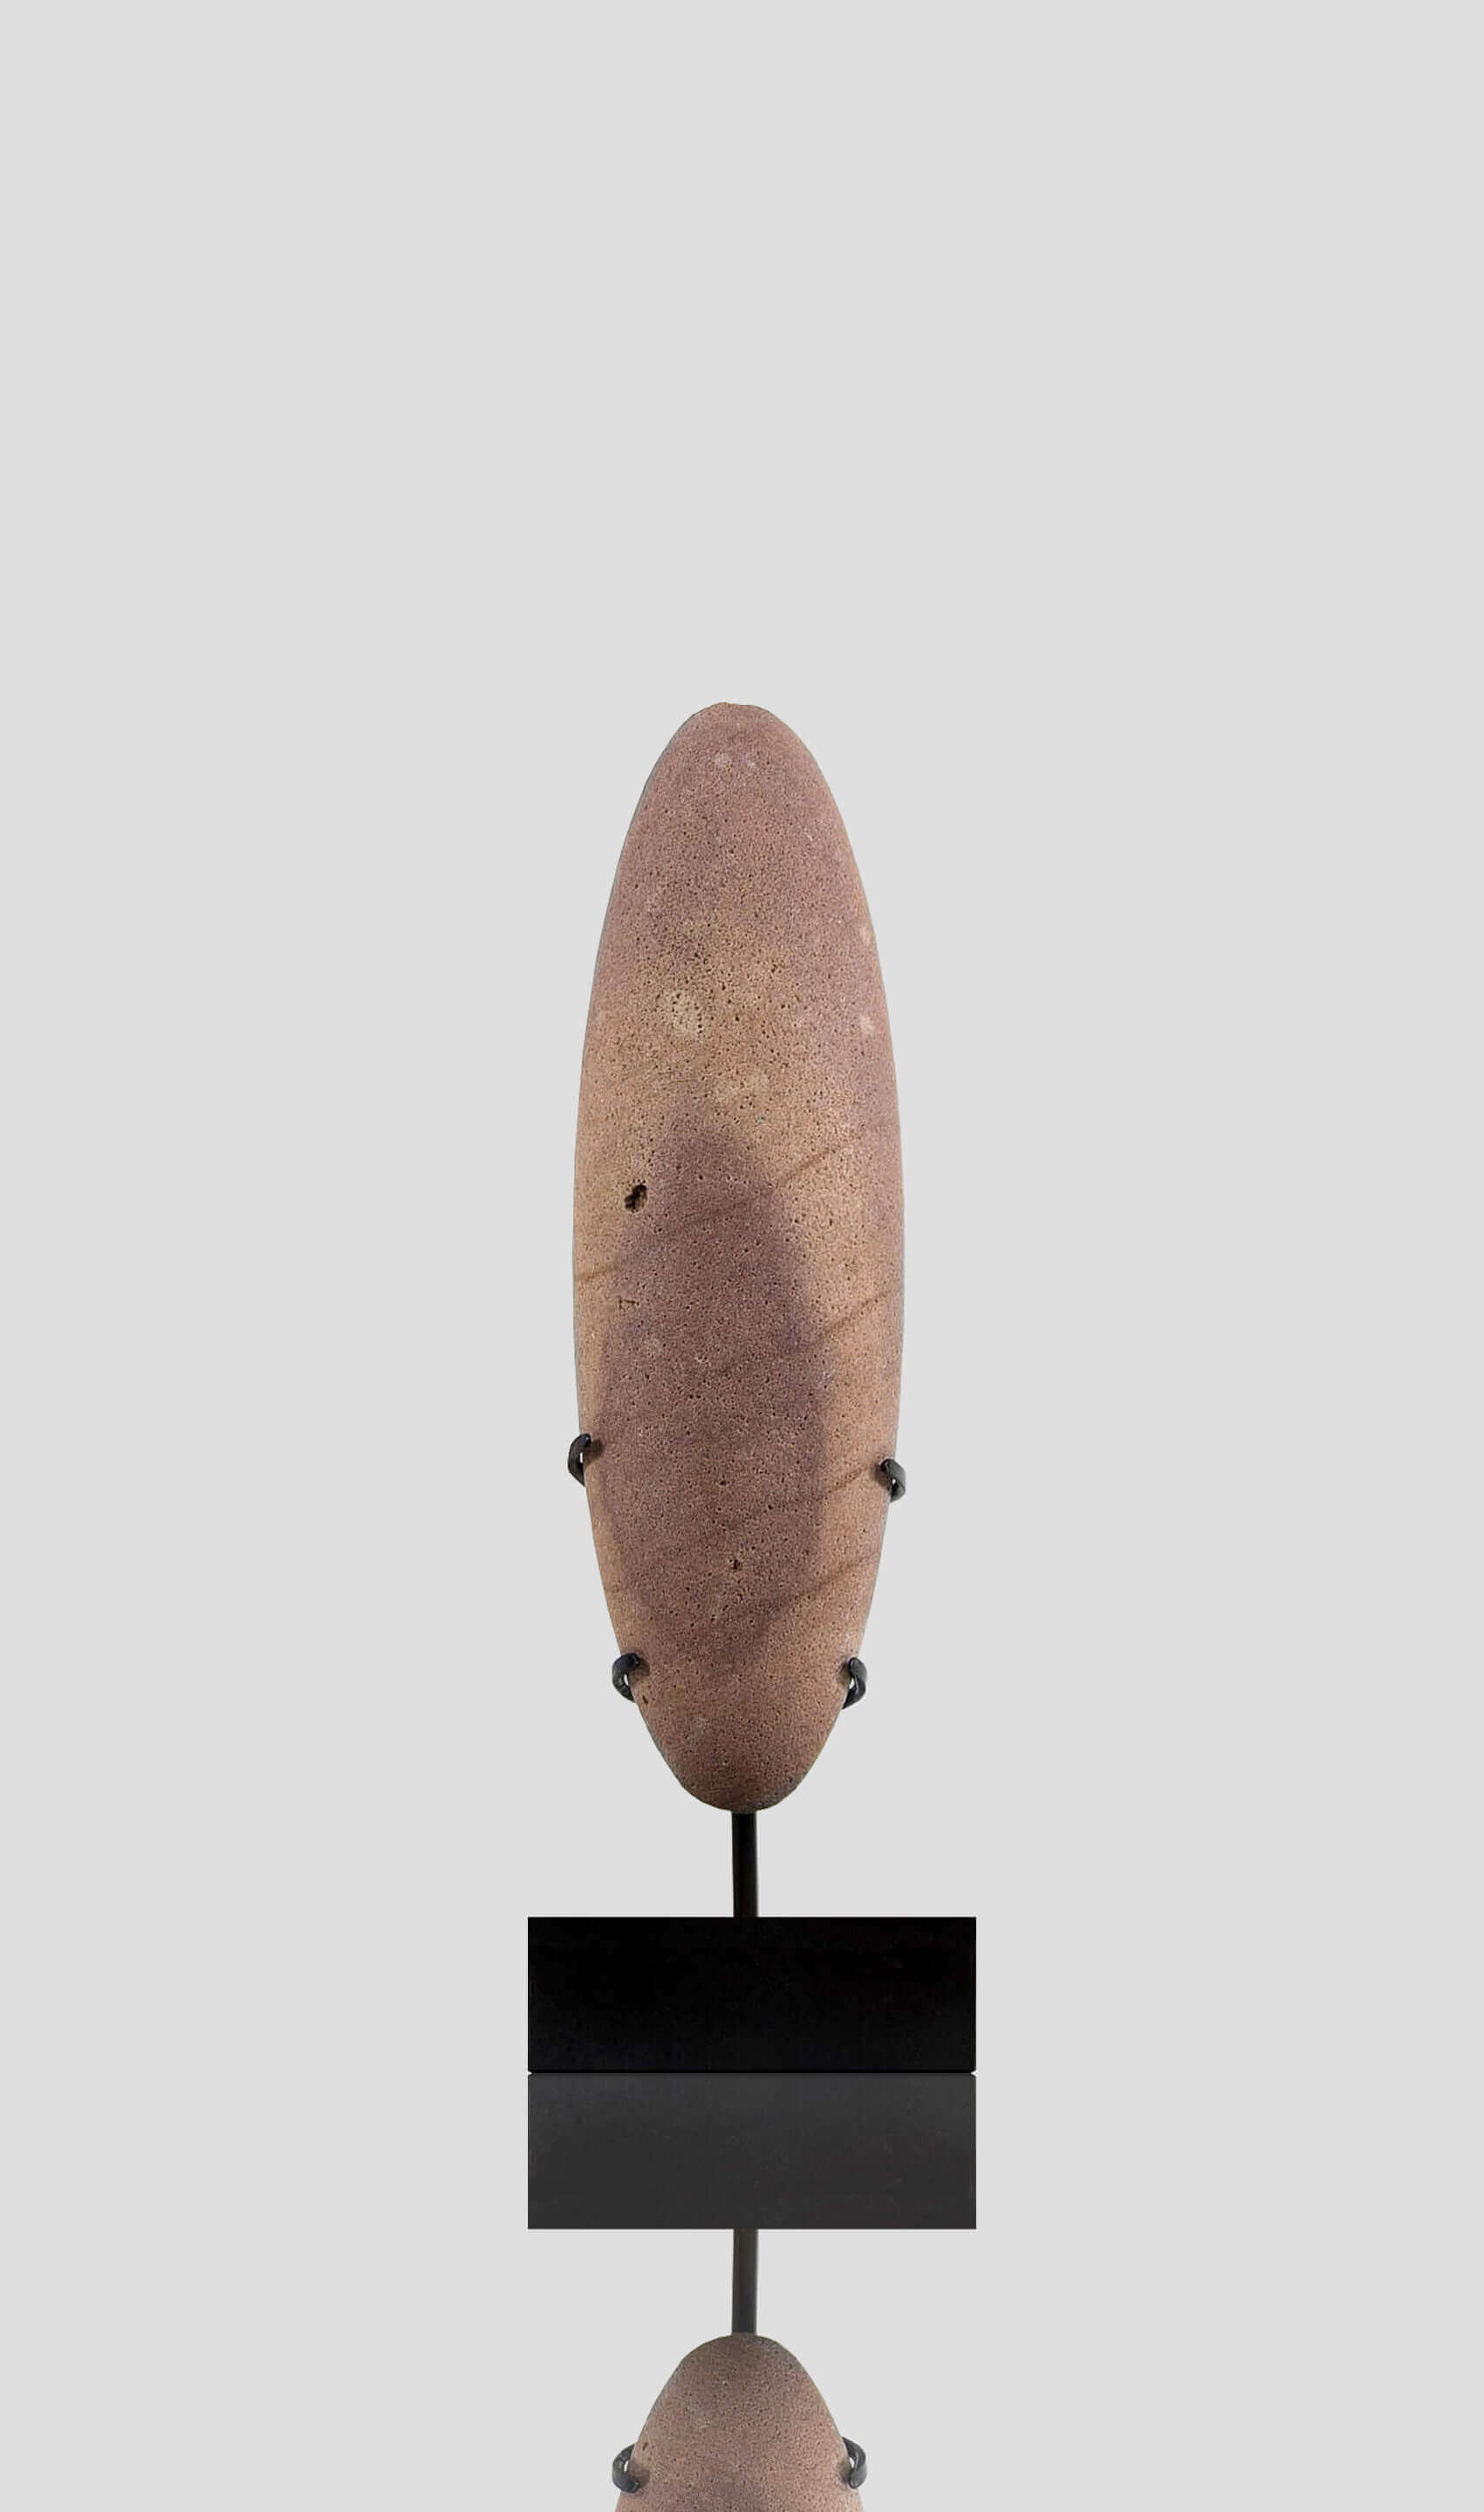 アーティファクト 新石器時代 カプシアン 手杵 [紀元前 8,500 年] 247mm